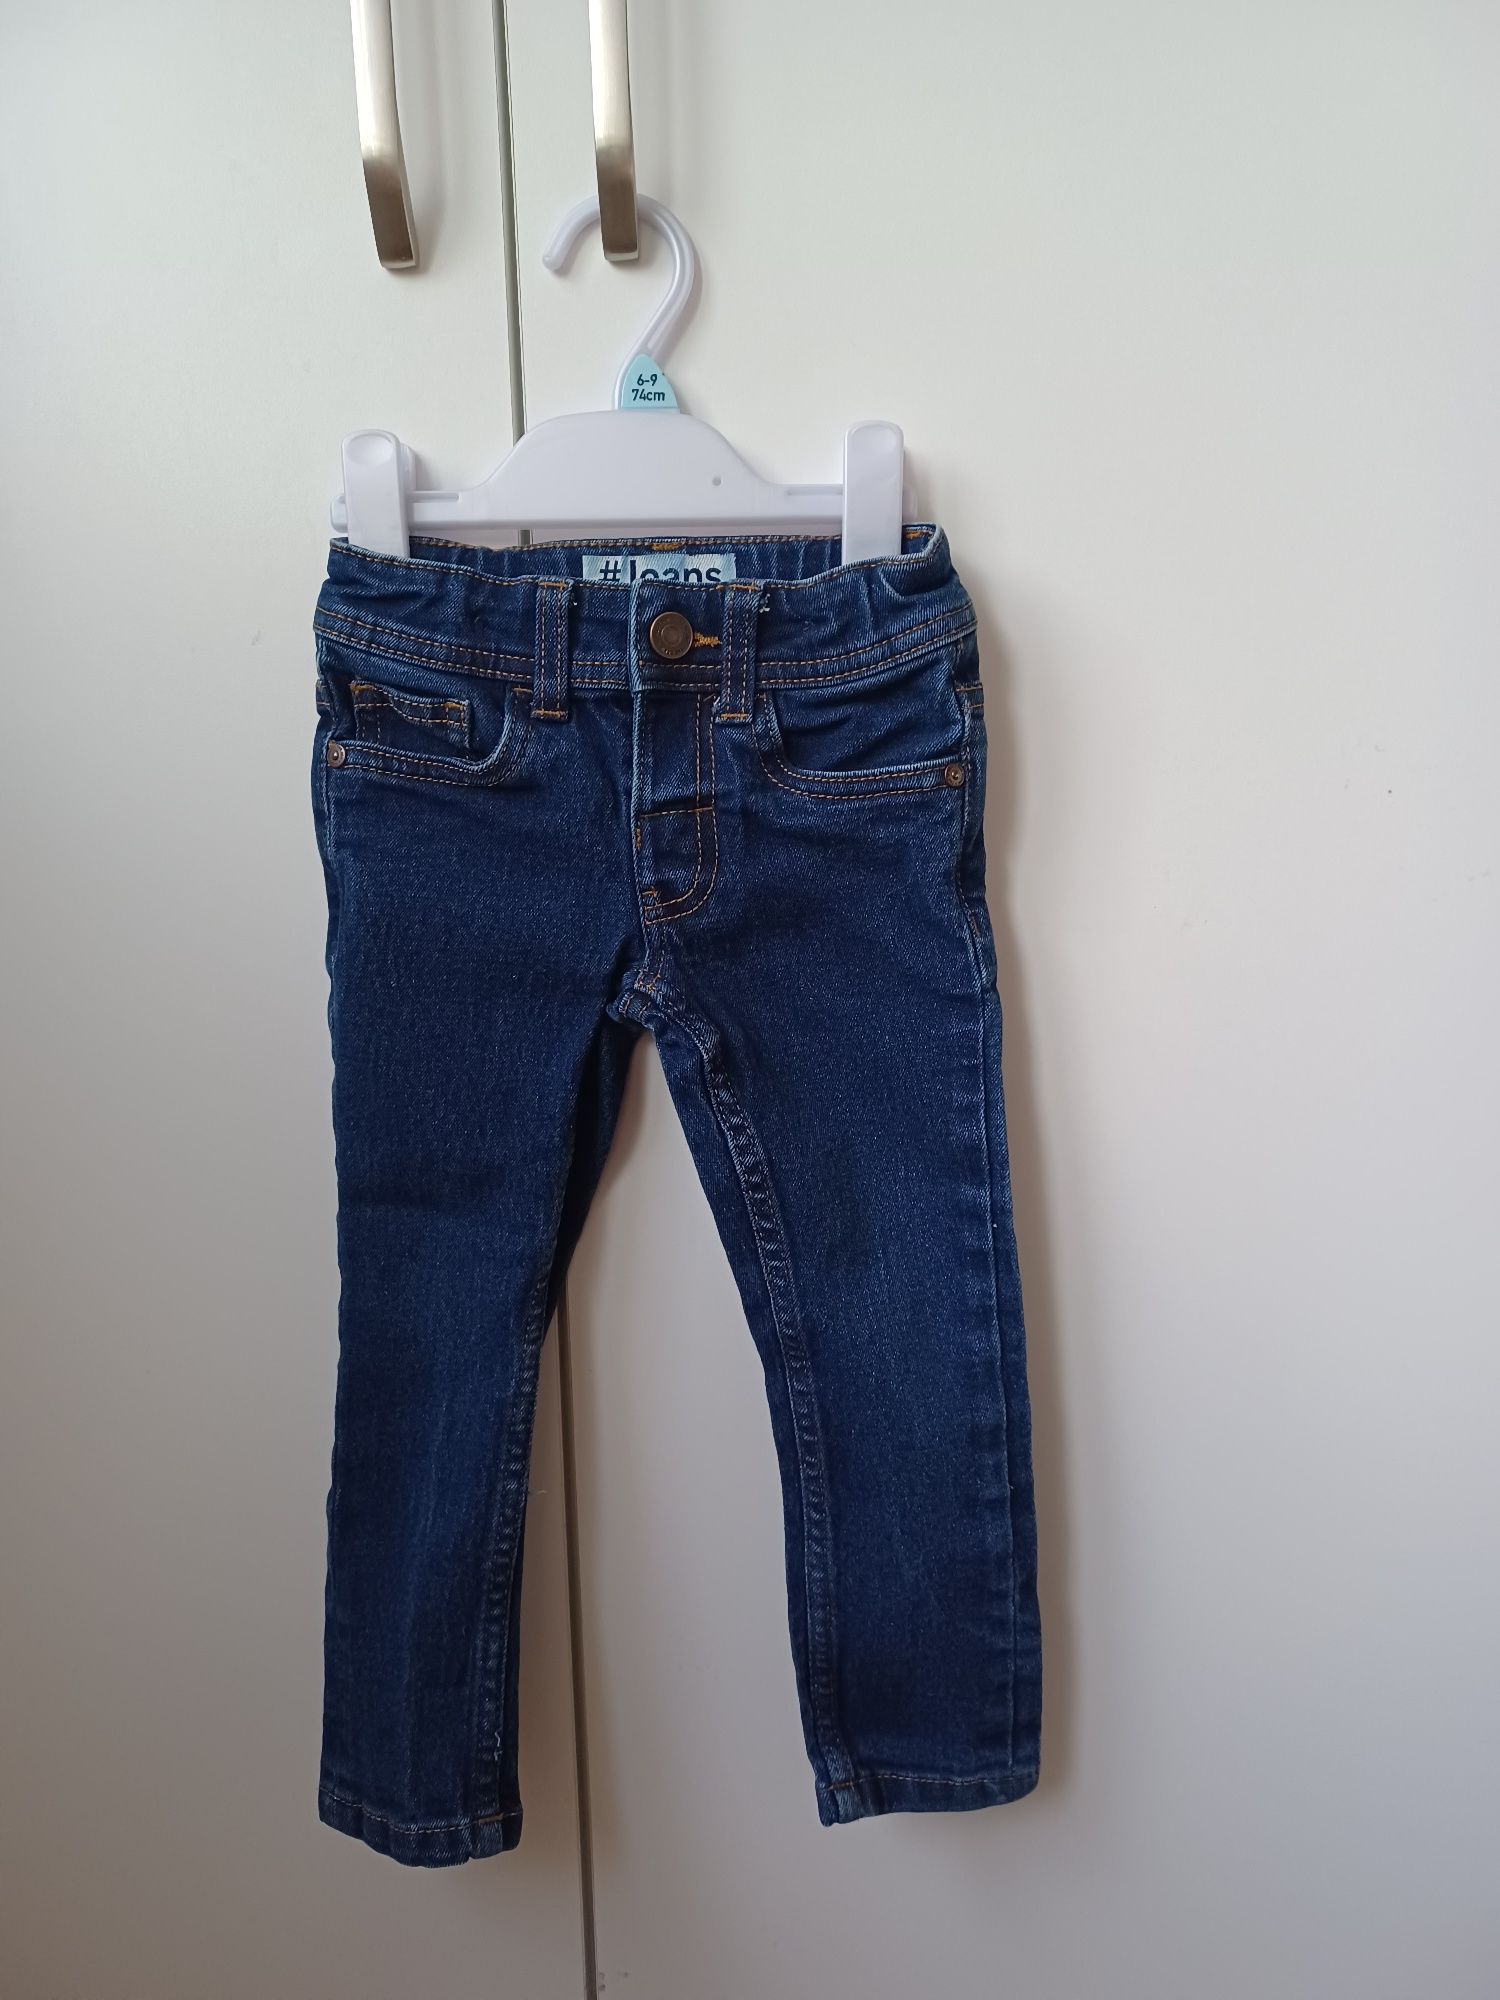 Spodnie dżinsowe chłopięce jeansy c&a Palomino 92